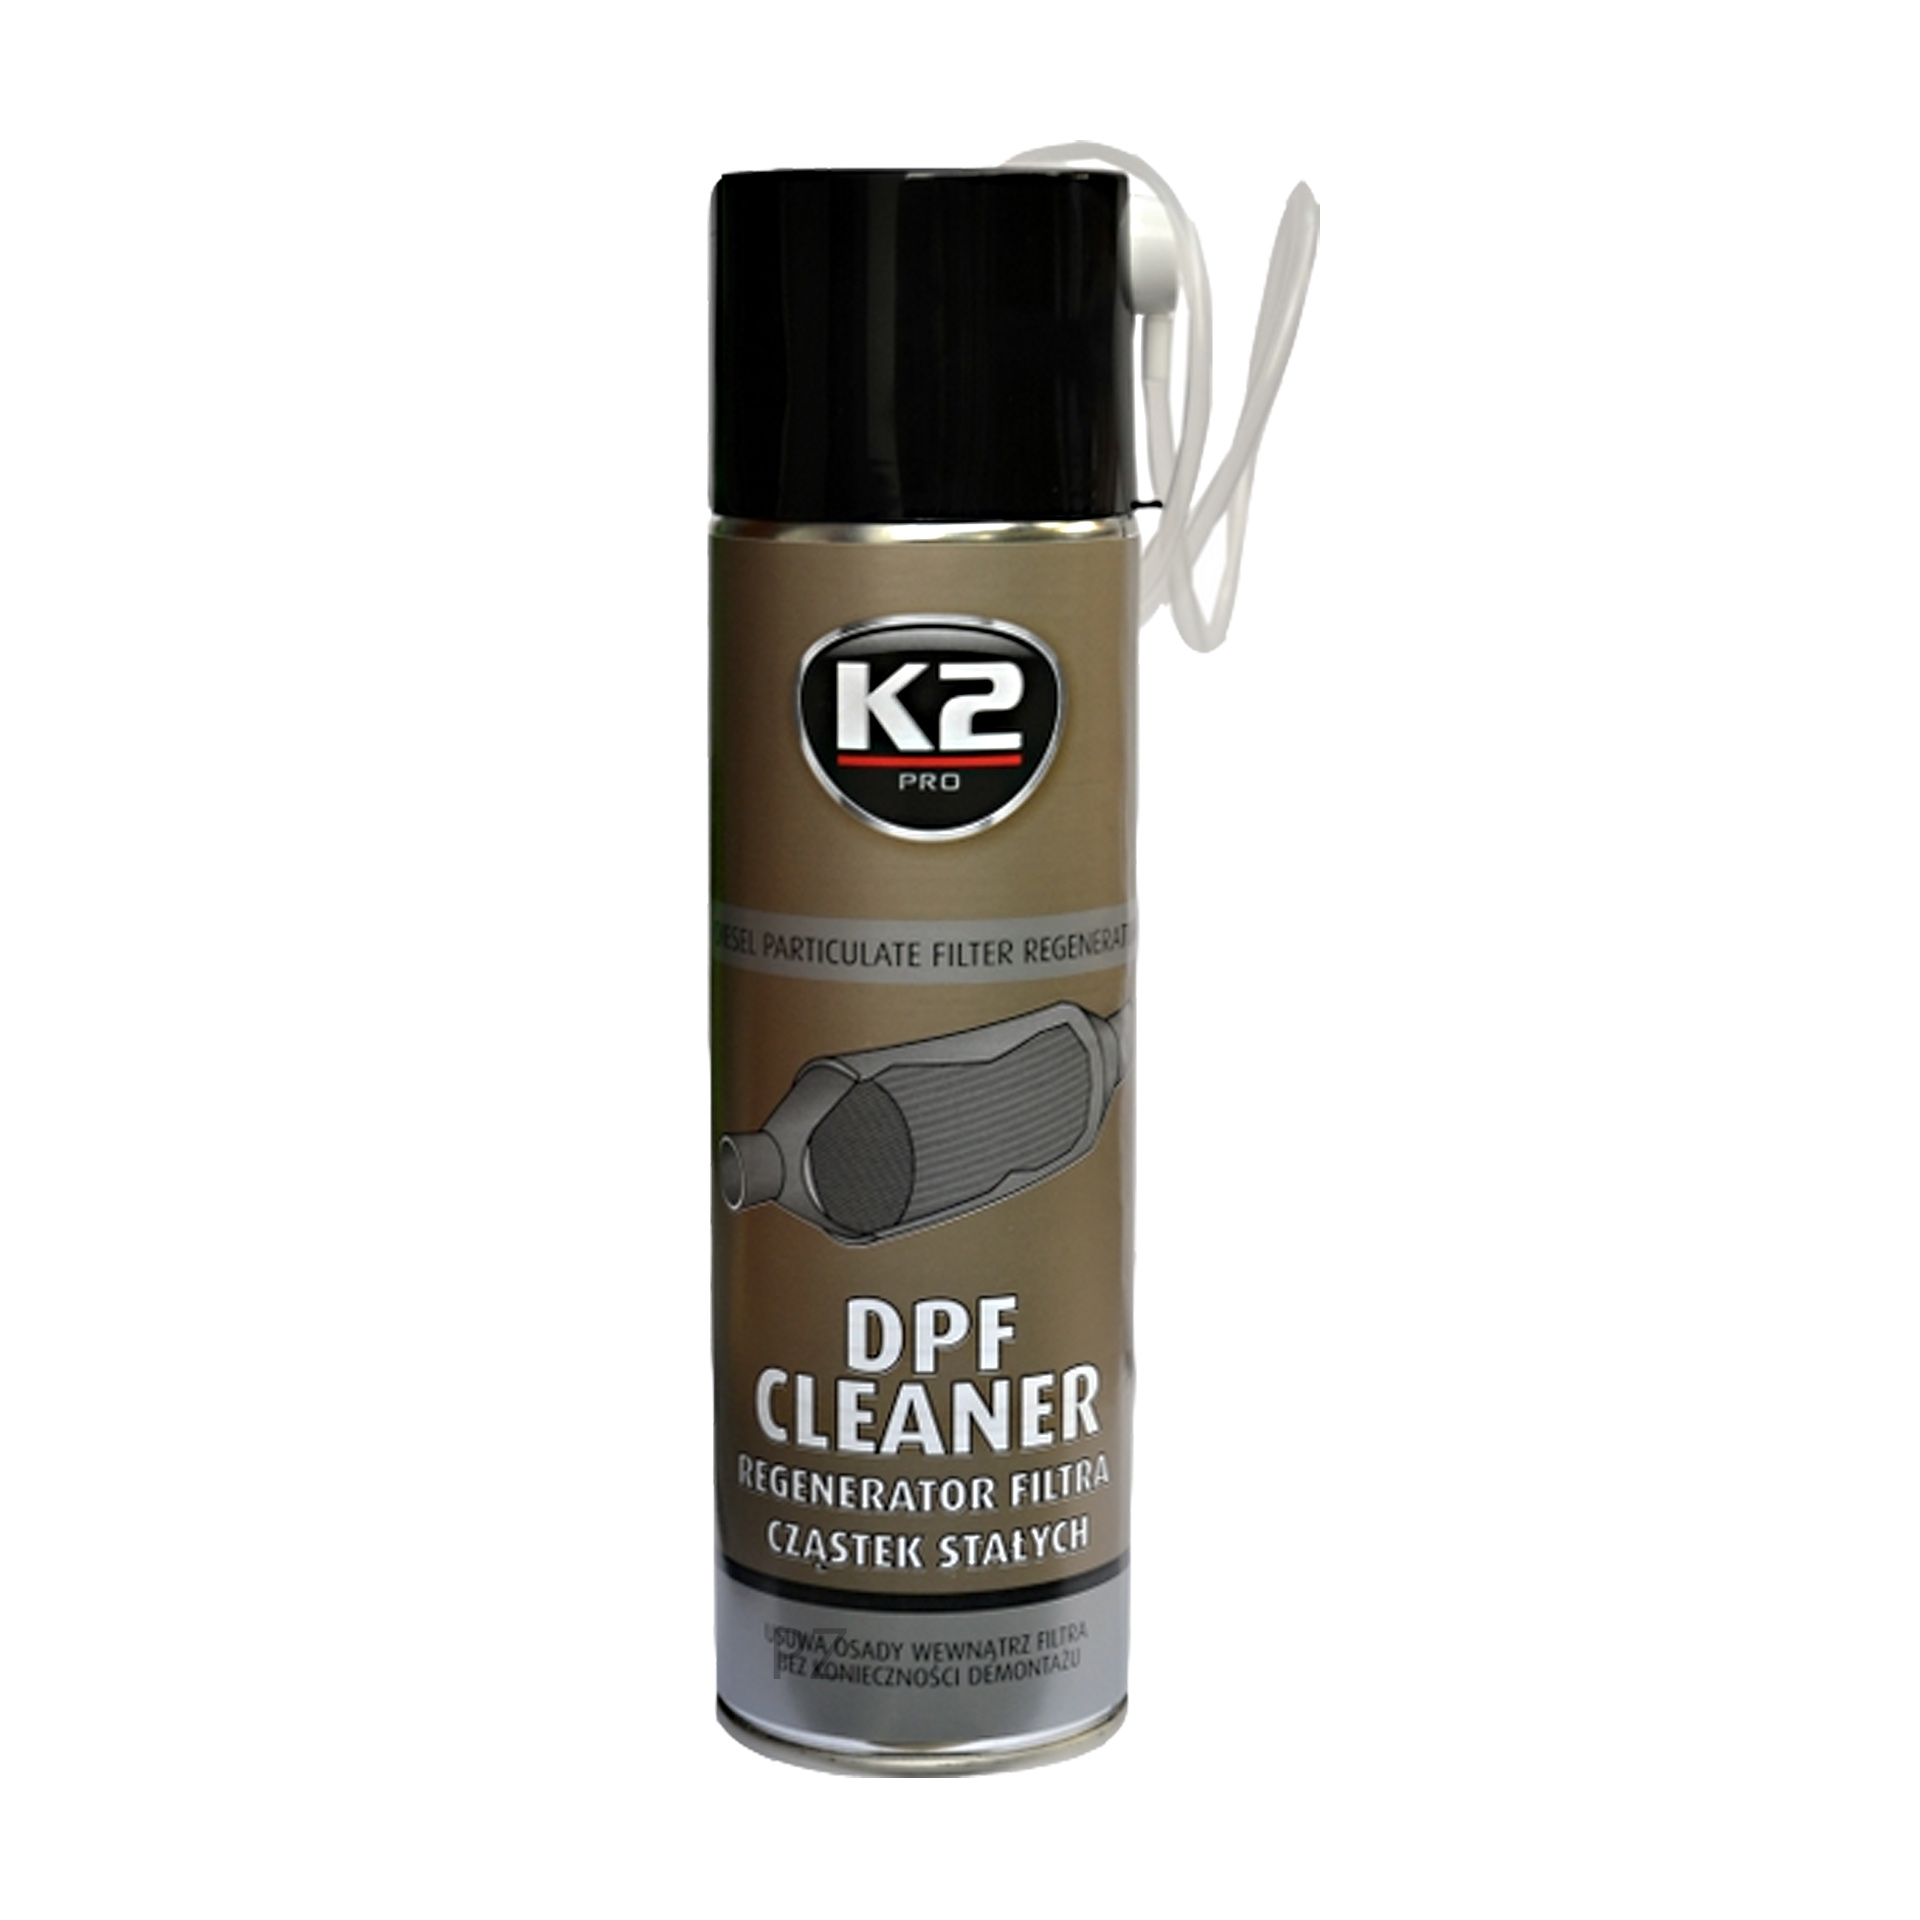 K2 DPF cleaner 500 ml